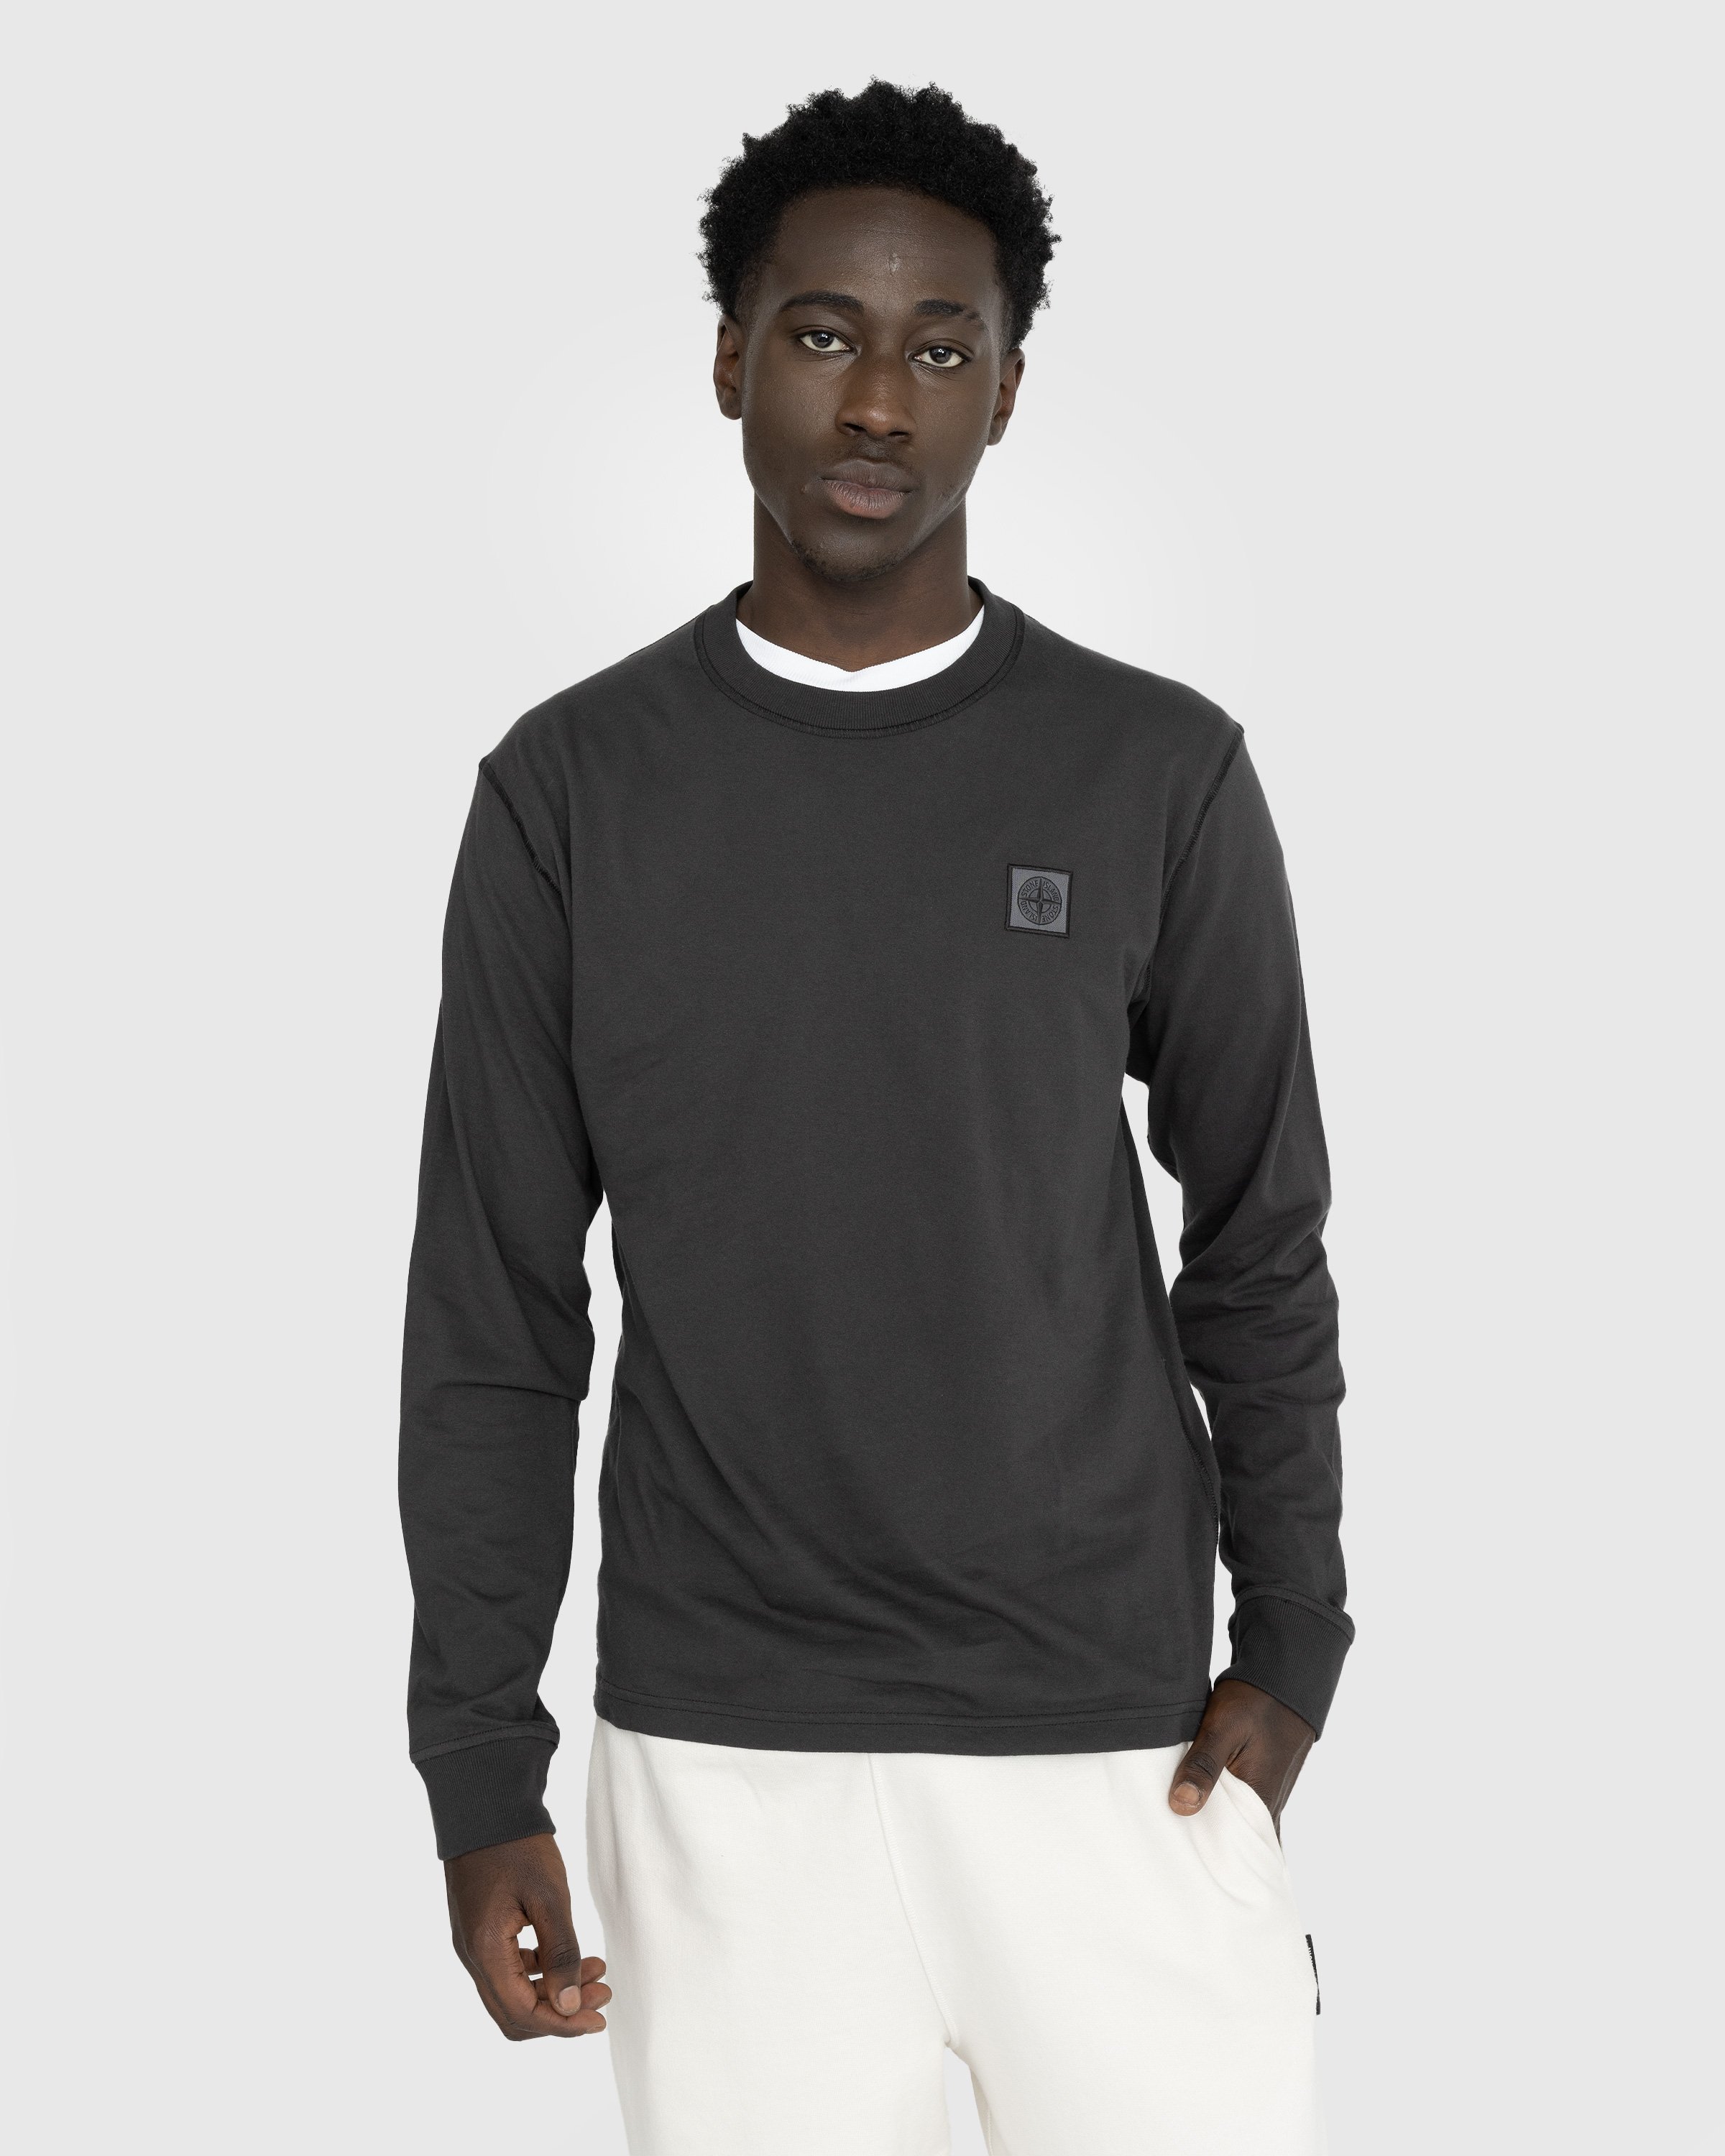 Stone Island - Fissato Longsleeve T-Shirt Charcoal - Clothing - Grey - Image 2